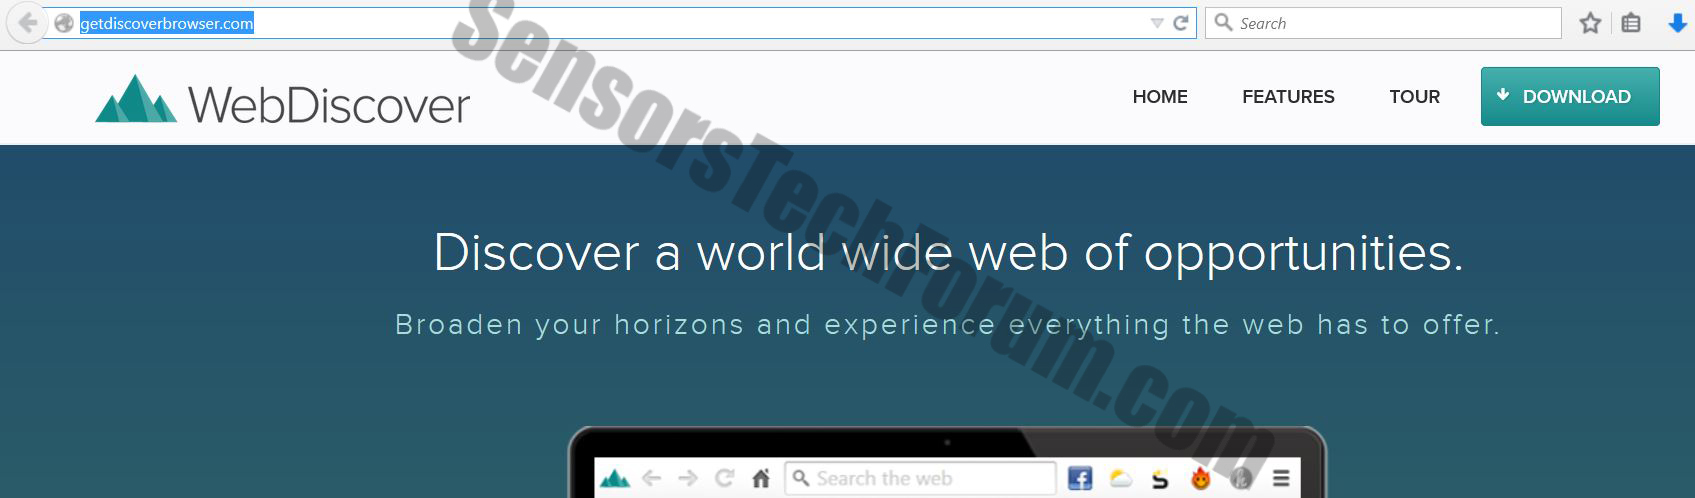 webdiscover-browser-website